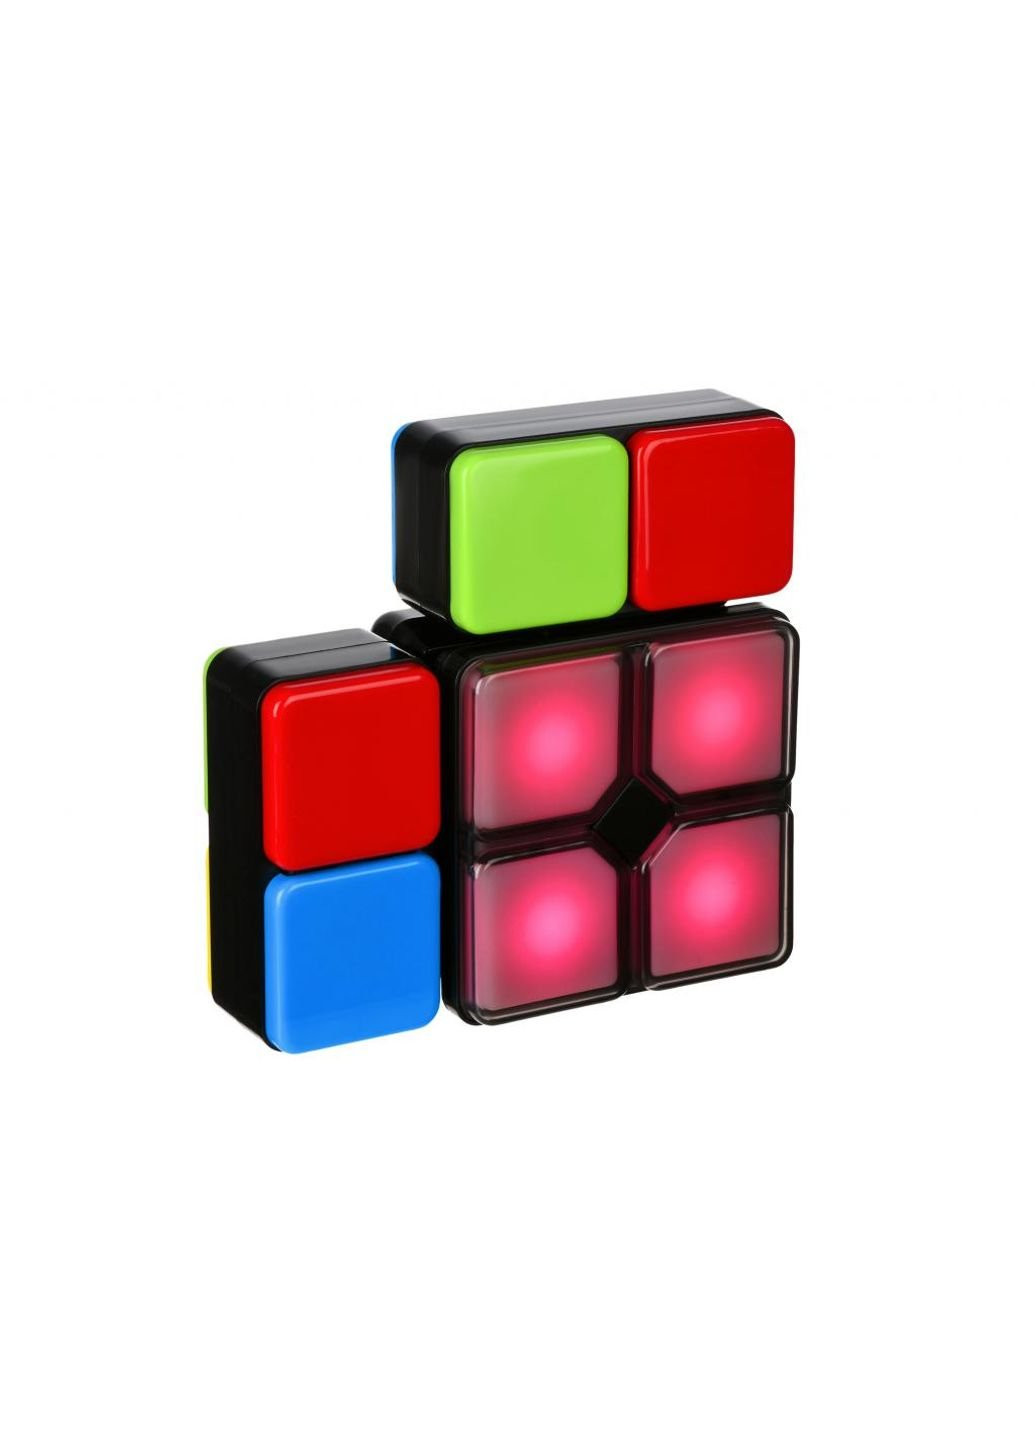 Настольная игра IQ Electric cube (OY-CUBE-02) Same Toy (249598377)